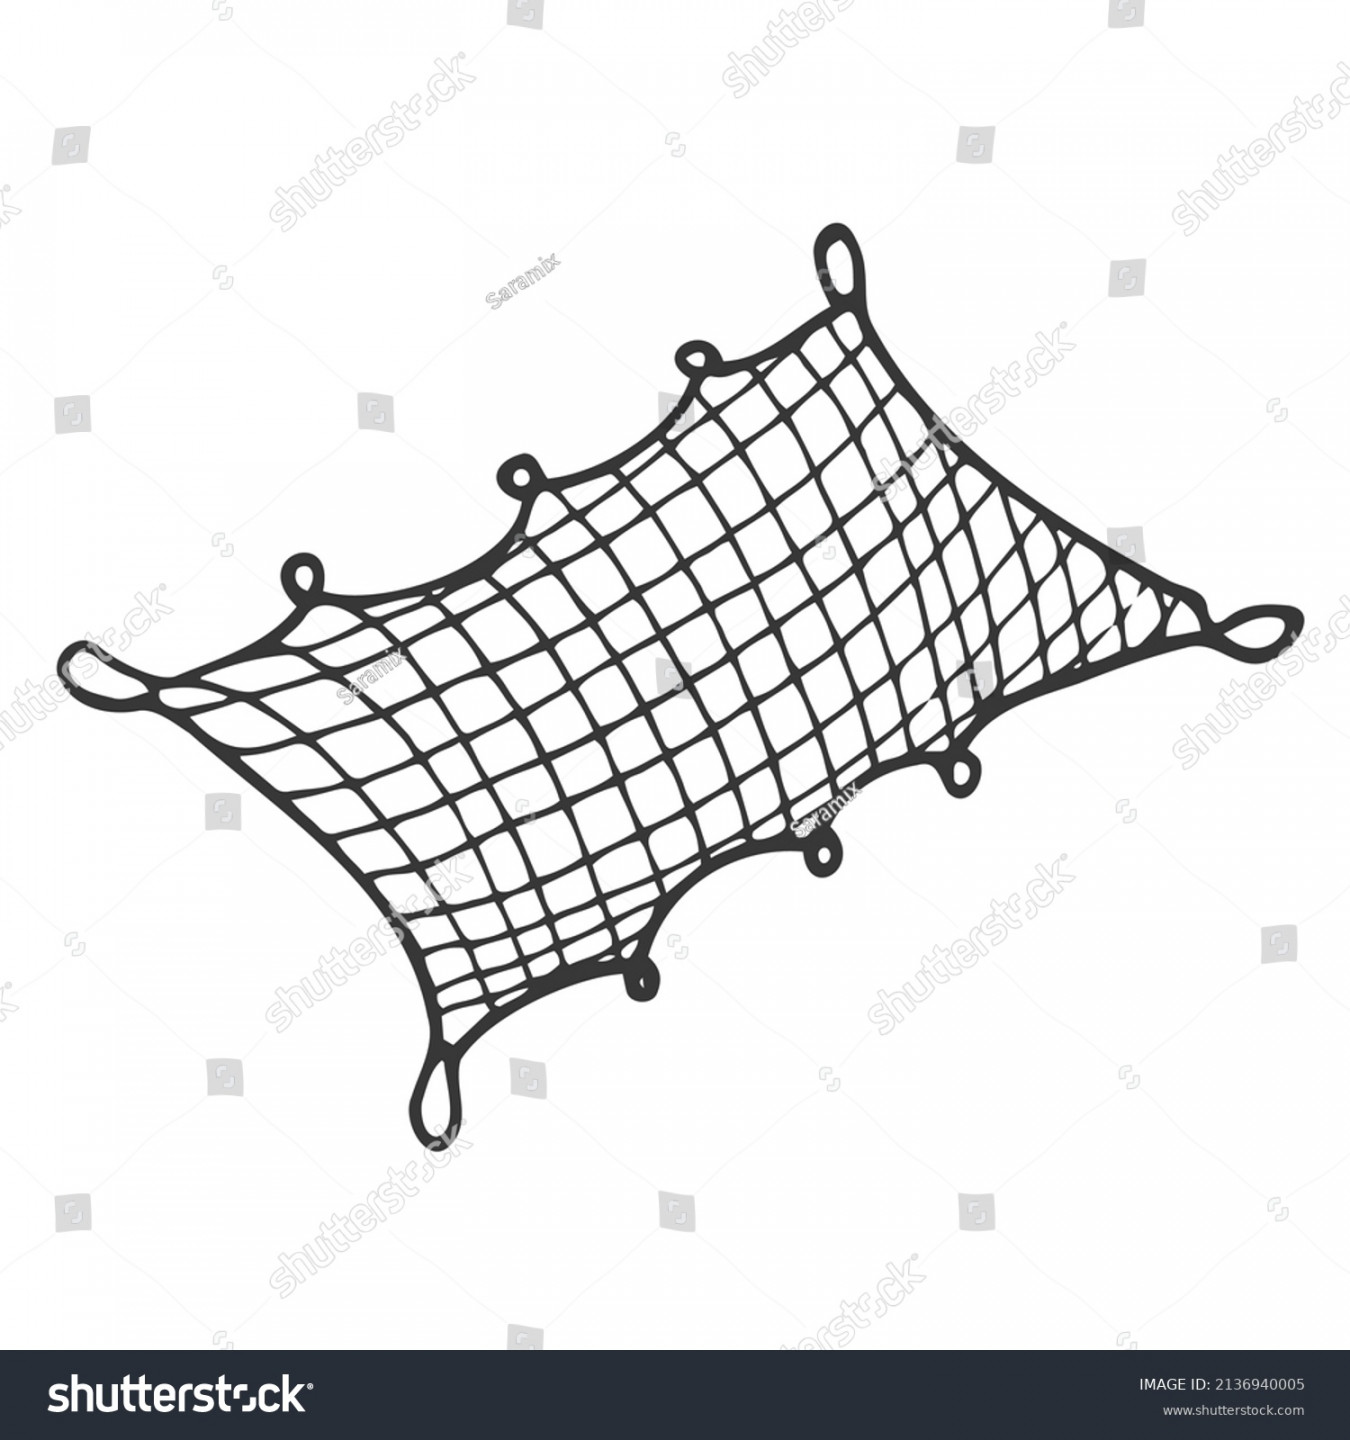 Doodle Fish net Vektor, handgezeichnet Fischerei: Stock